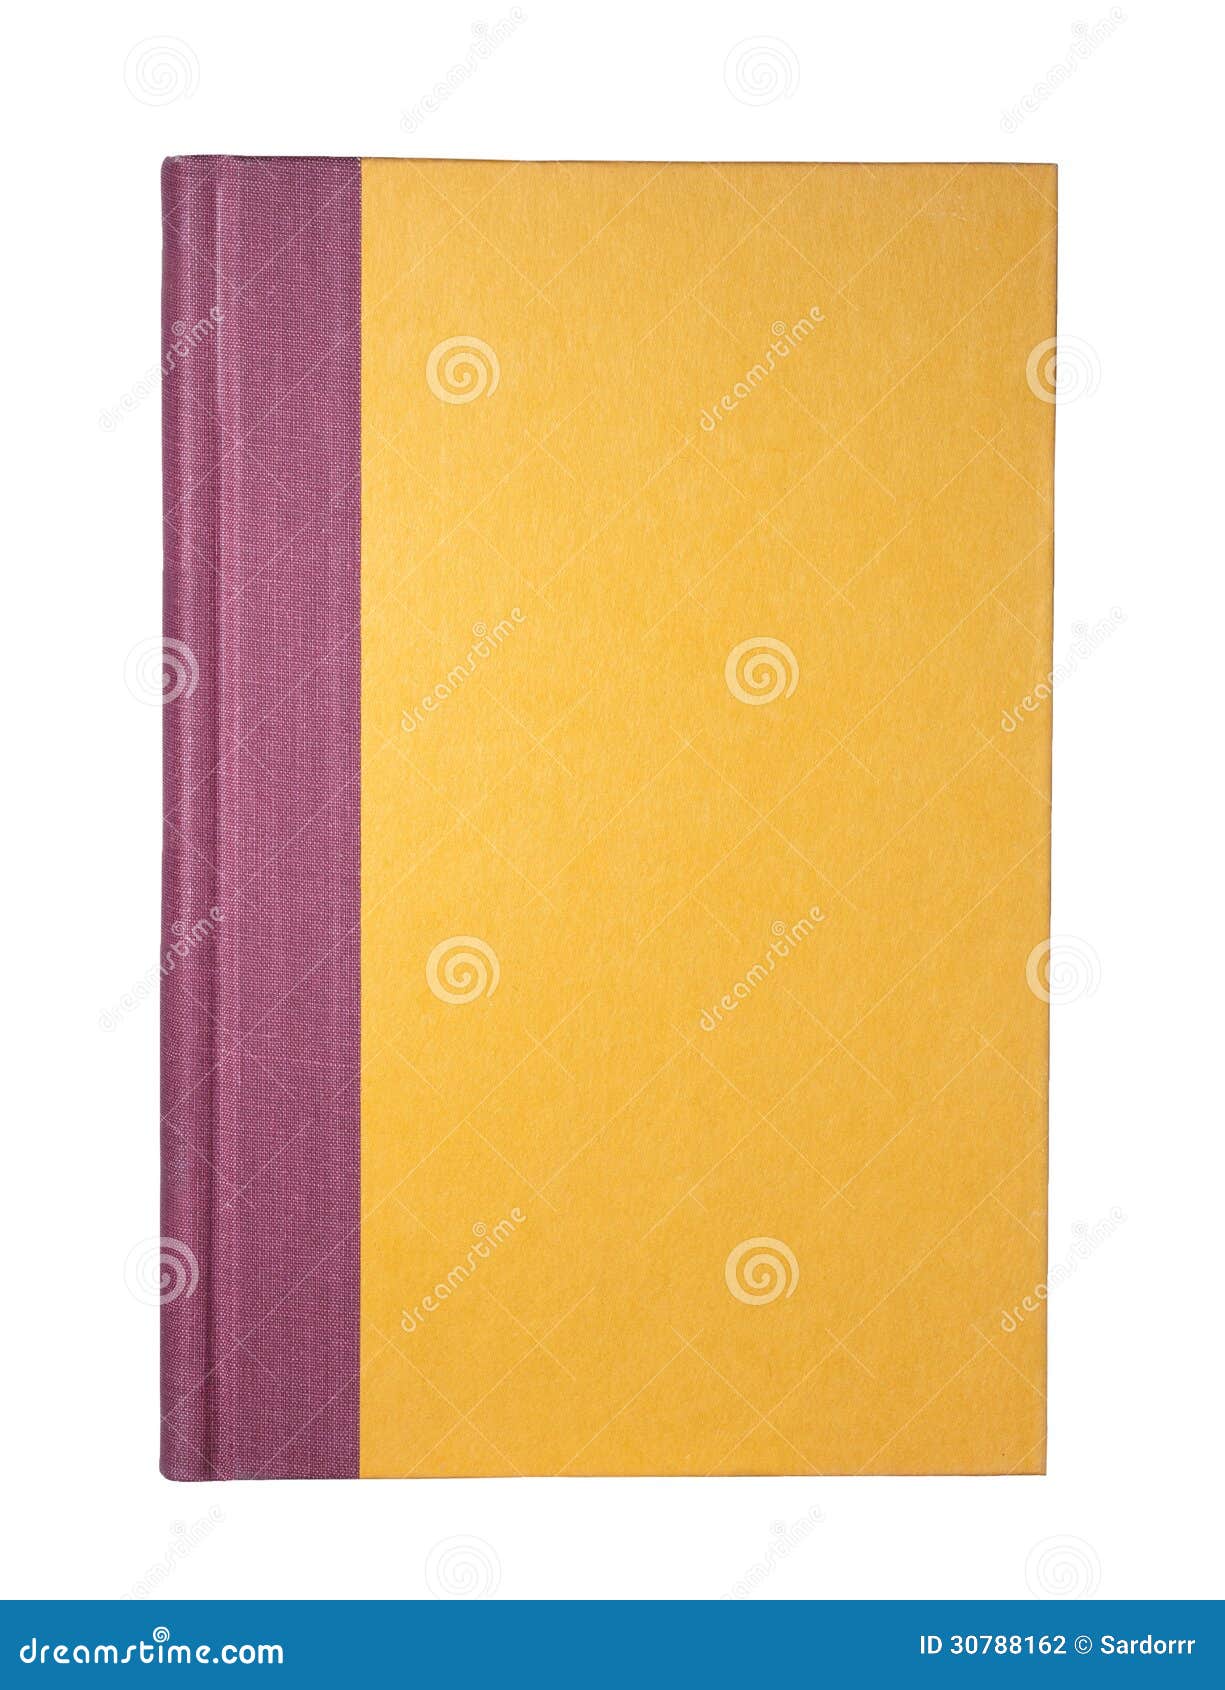 578 Portada Del Libro Amarillo Fotos de stock - Fotos libres de regalías de  Dreamstime